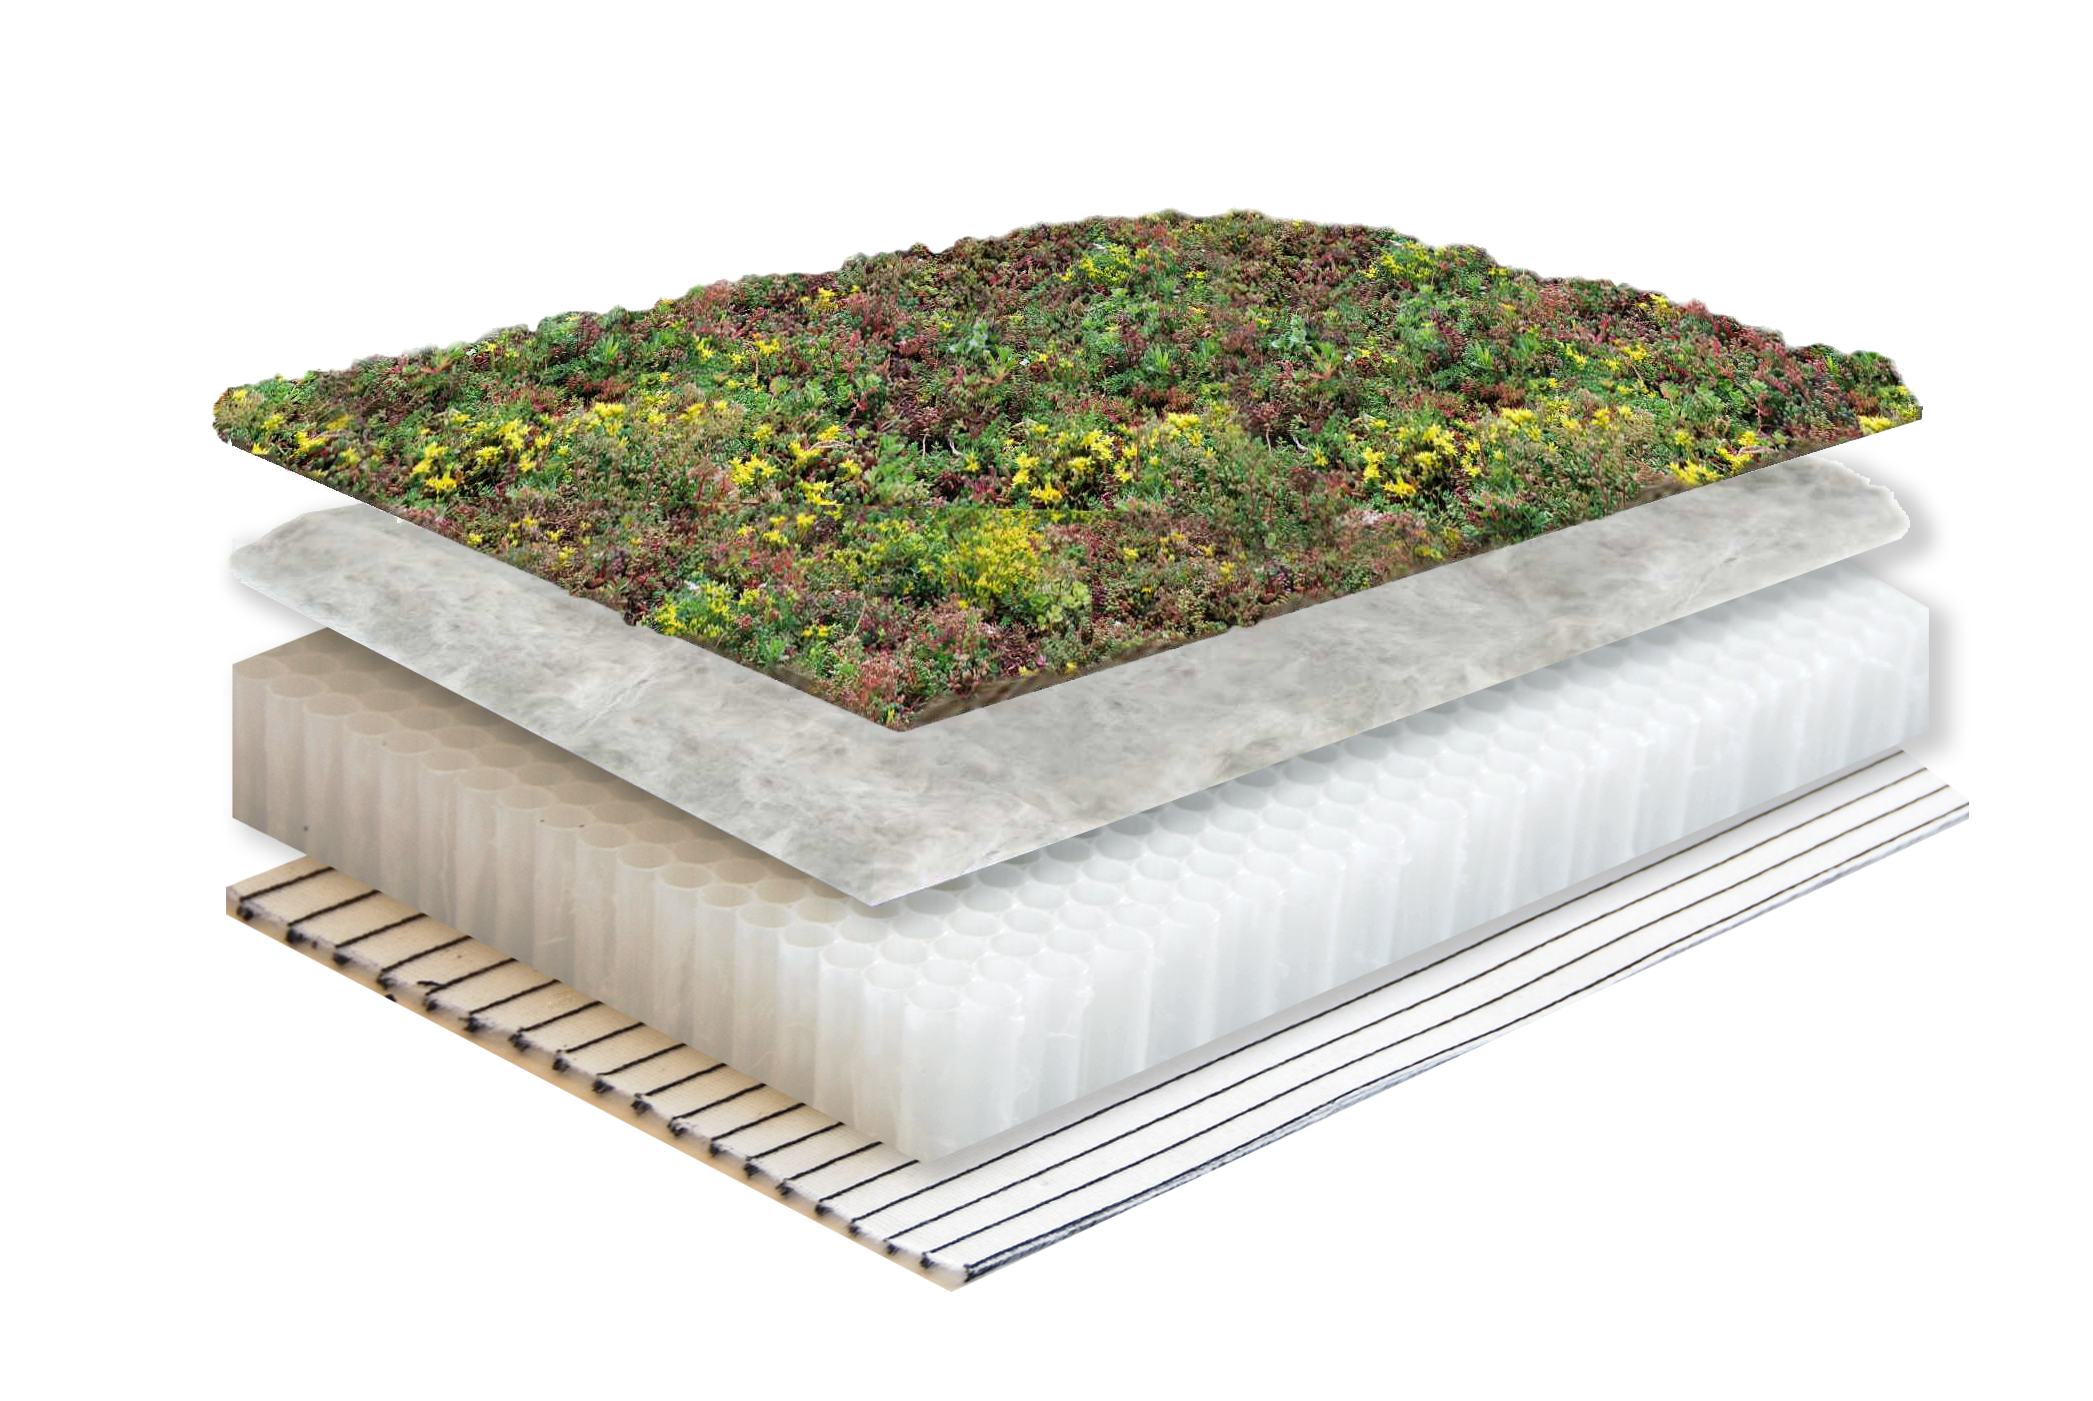 Groendak systeemopbouw plat dak met Sedum